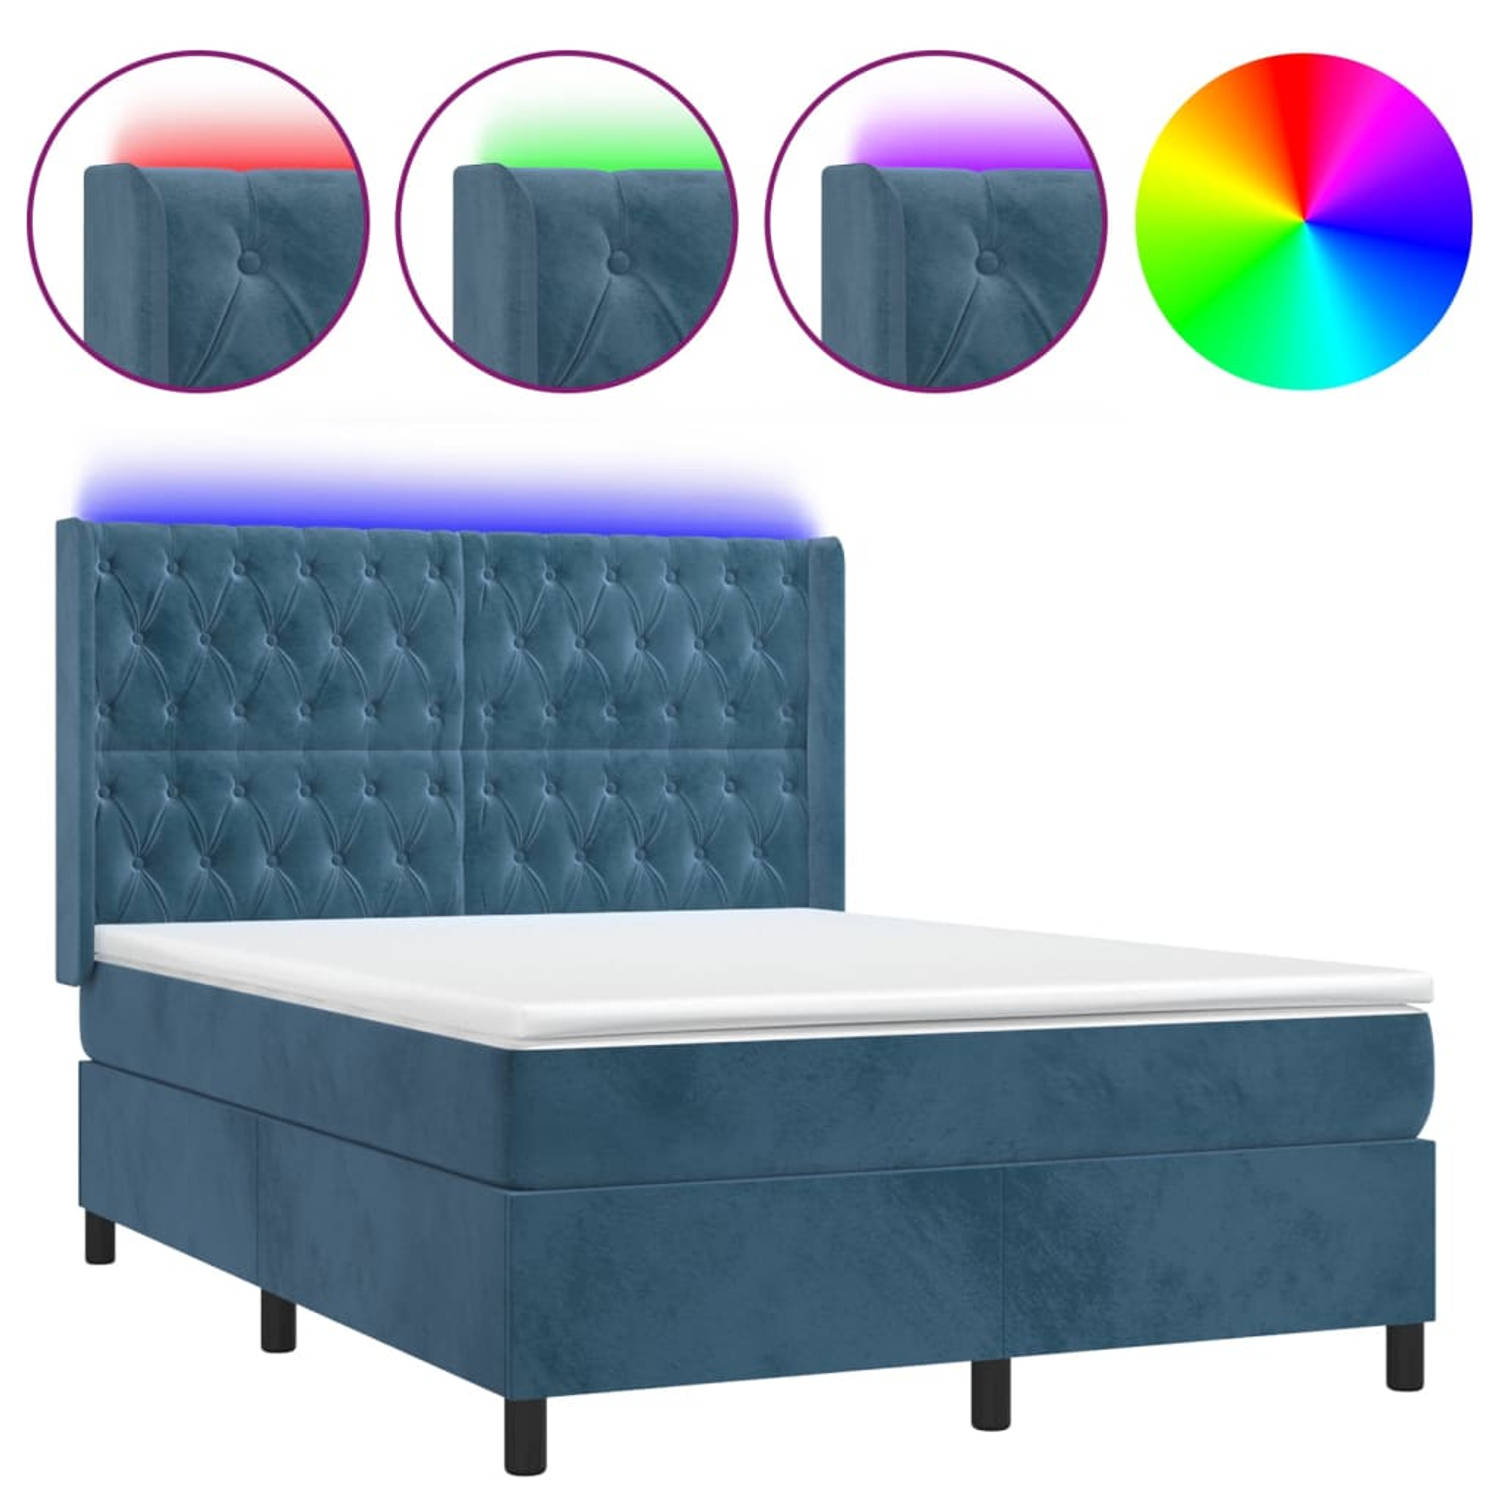 The Living Store Boxspring Bed - Donkerblauw Fluweel - 203 x 147 x 118/128 cm - Verstelbaar hoofdbord - Pocketvering matras - Huidvriendelijk topmatras - Kleurrijke LED-verlichting